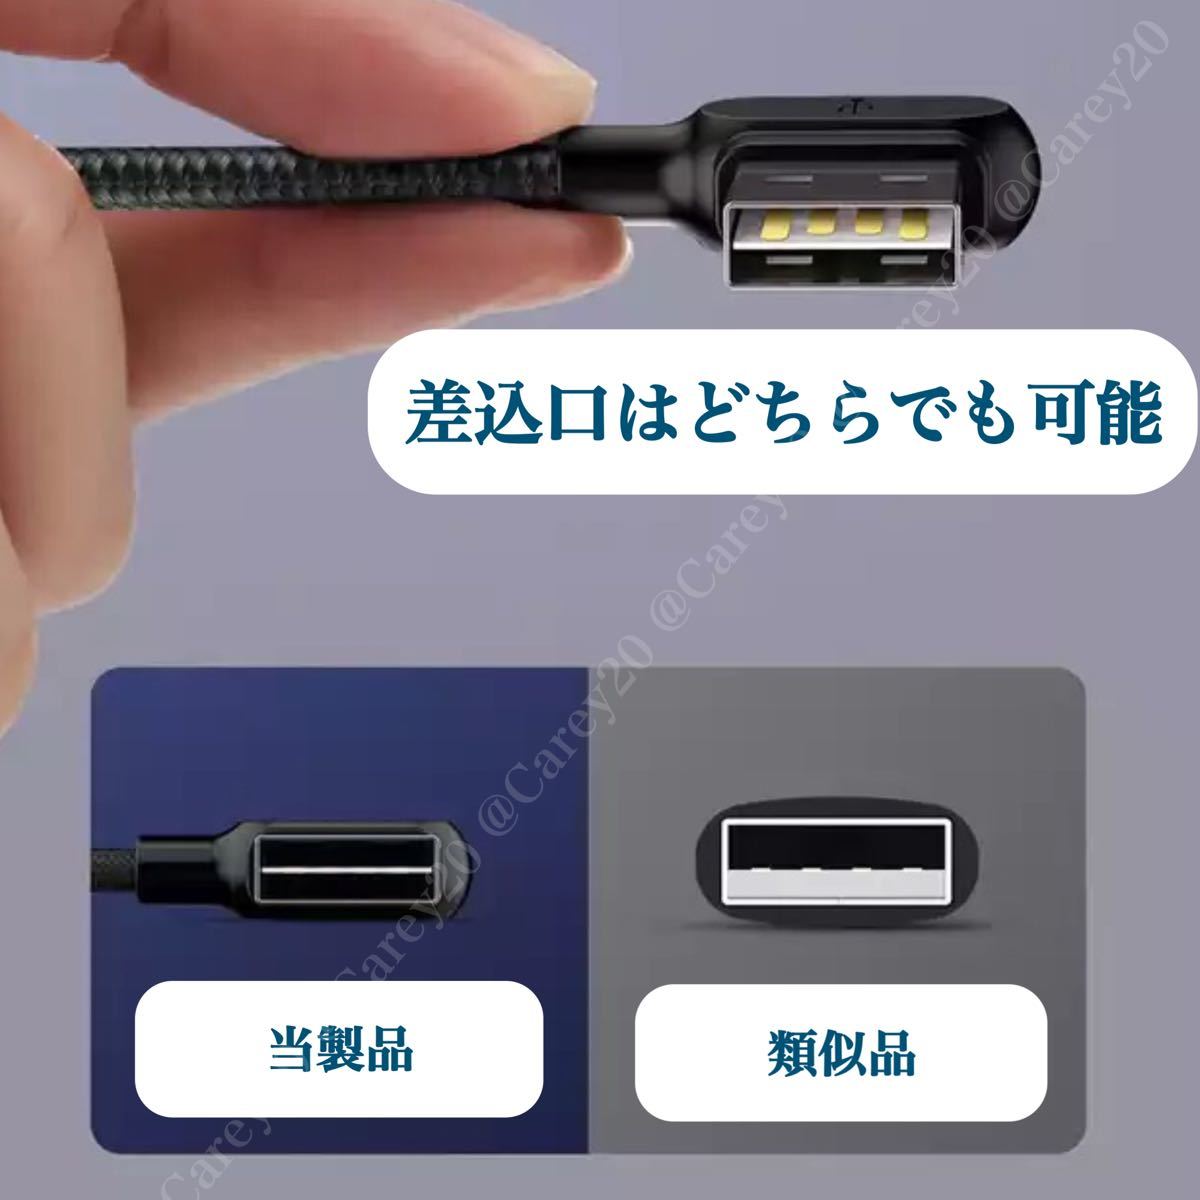 ◆2本◆L字型 1.8m/mcdodo社 充電 ケーブル ライトニングケーブル iPhone 急速 充電器 USB データ転送